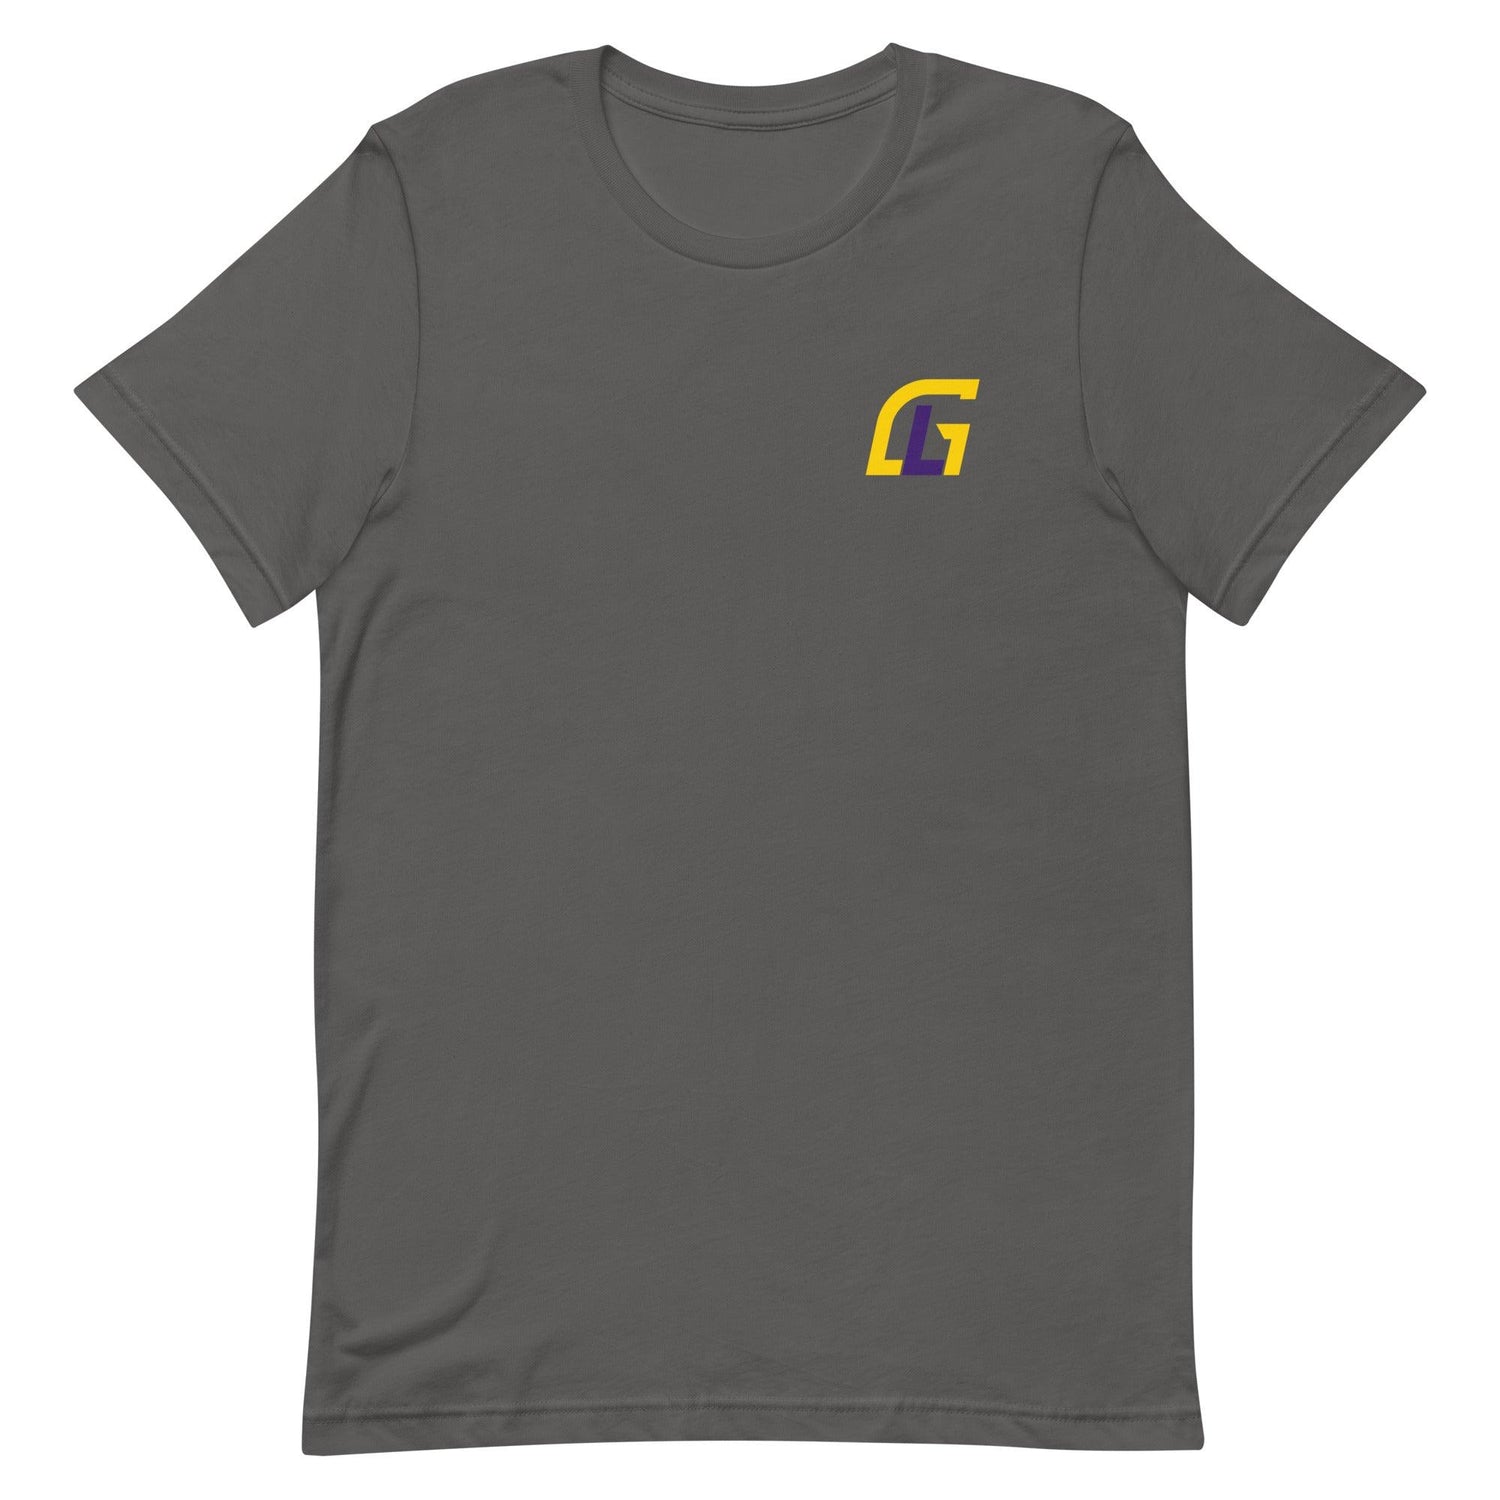 Glen Logan "Essential" t-shirt - Fan Arch